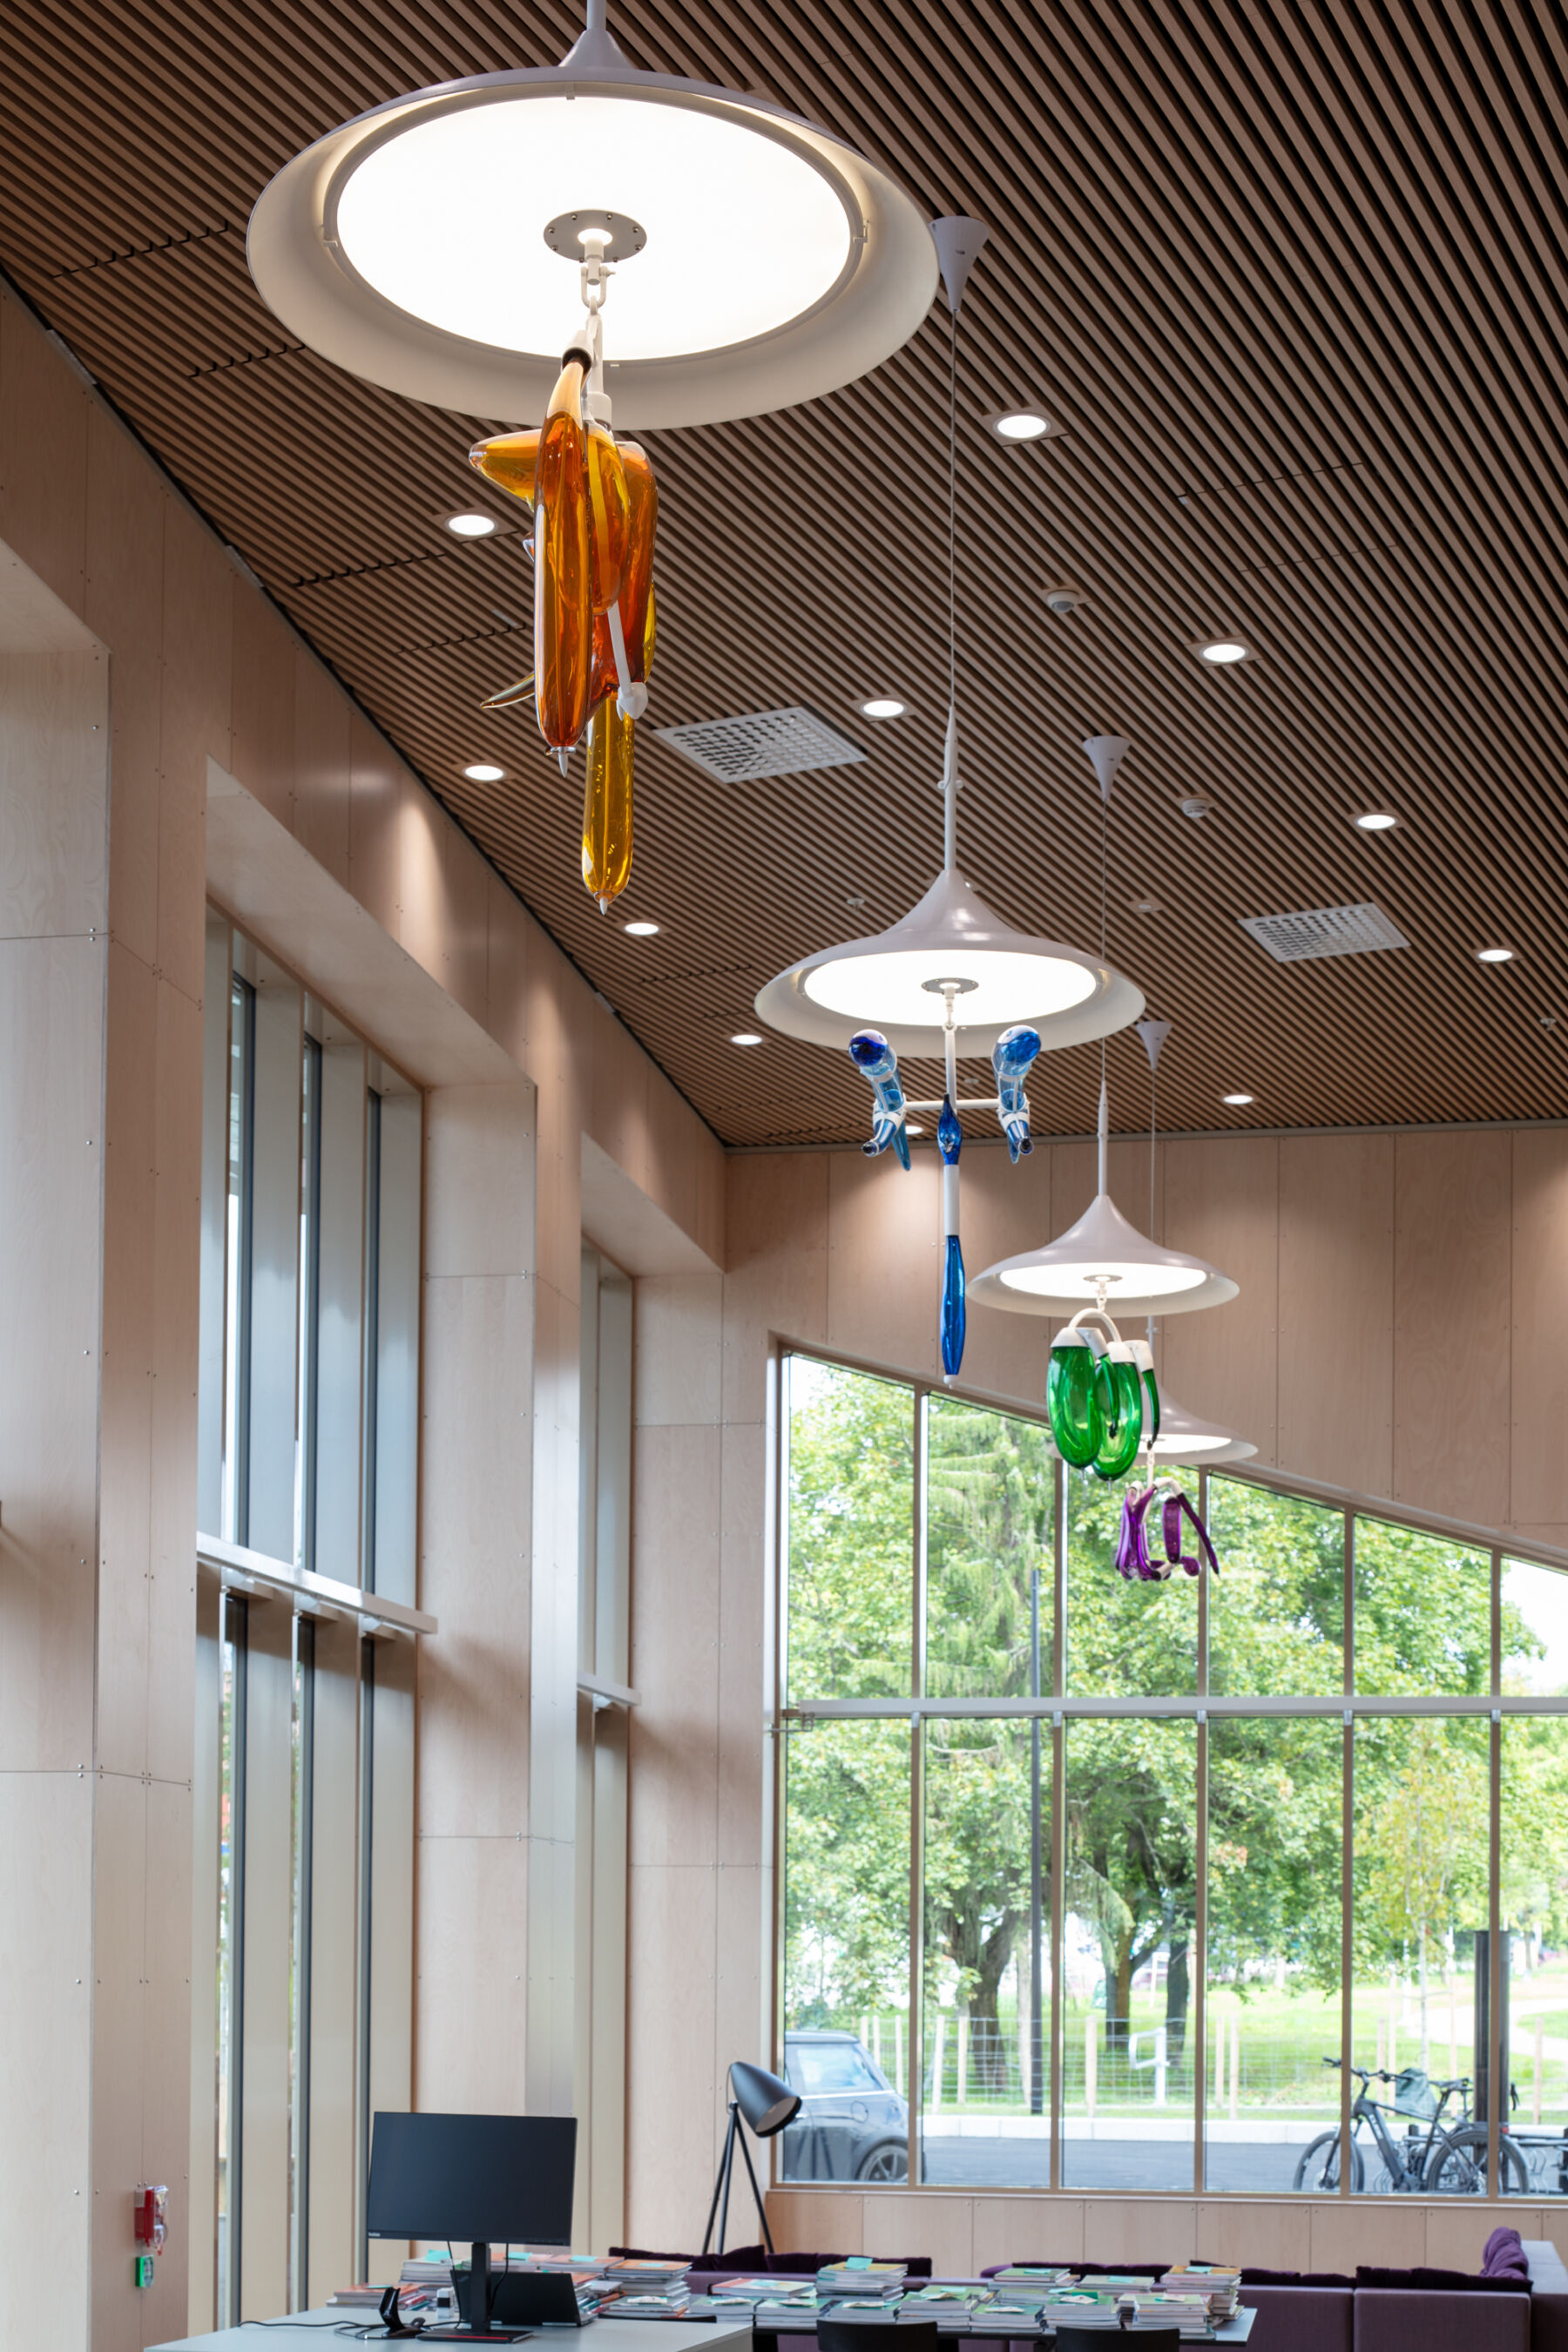 Fire skulpturelle lamper henger i taket i et bibliotek. Foto.